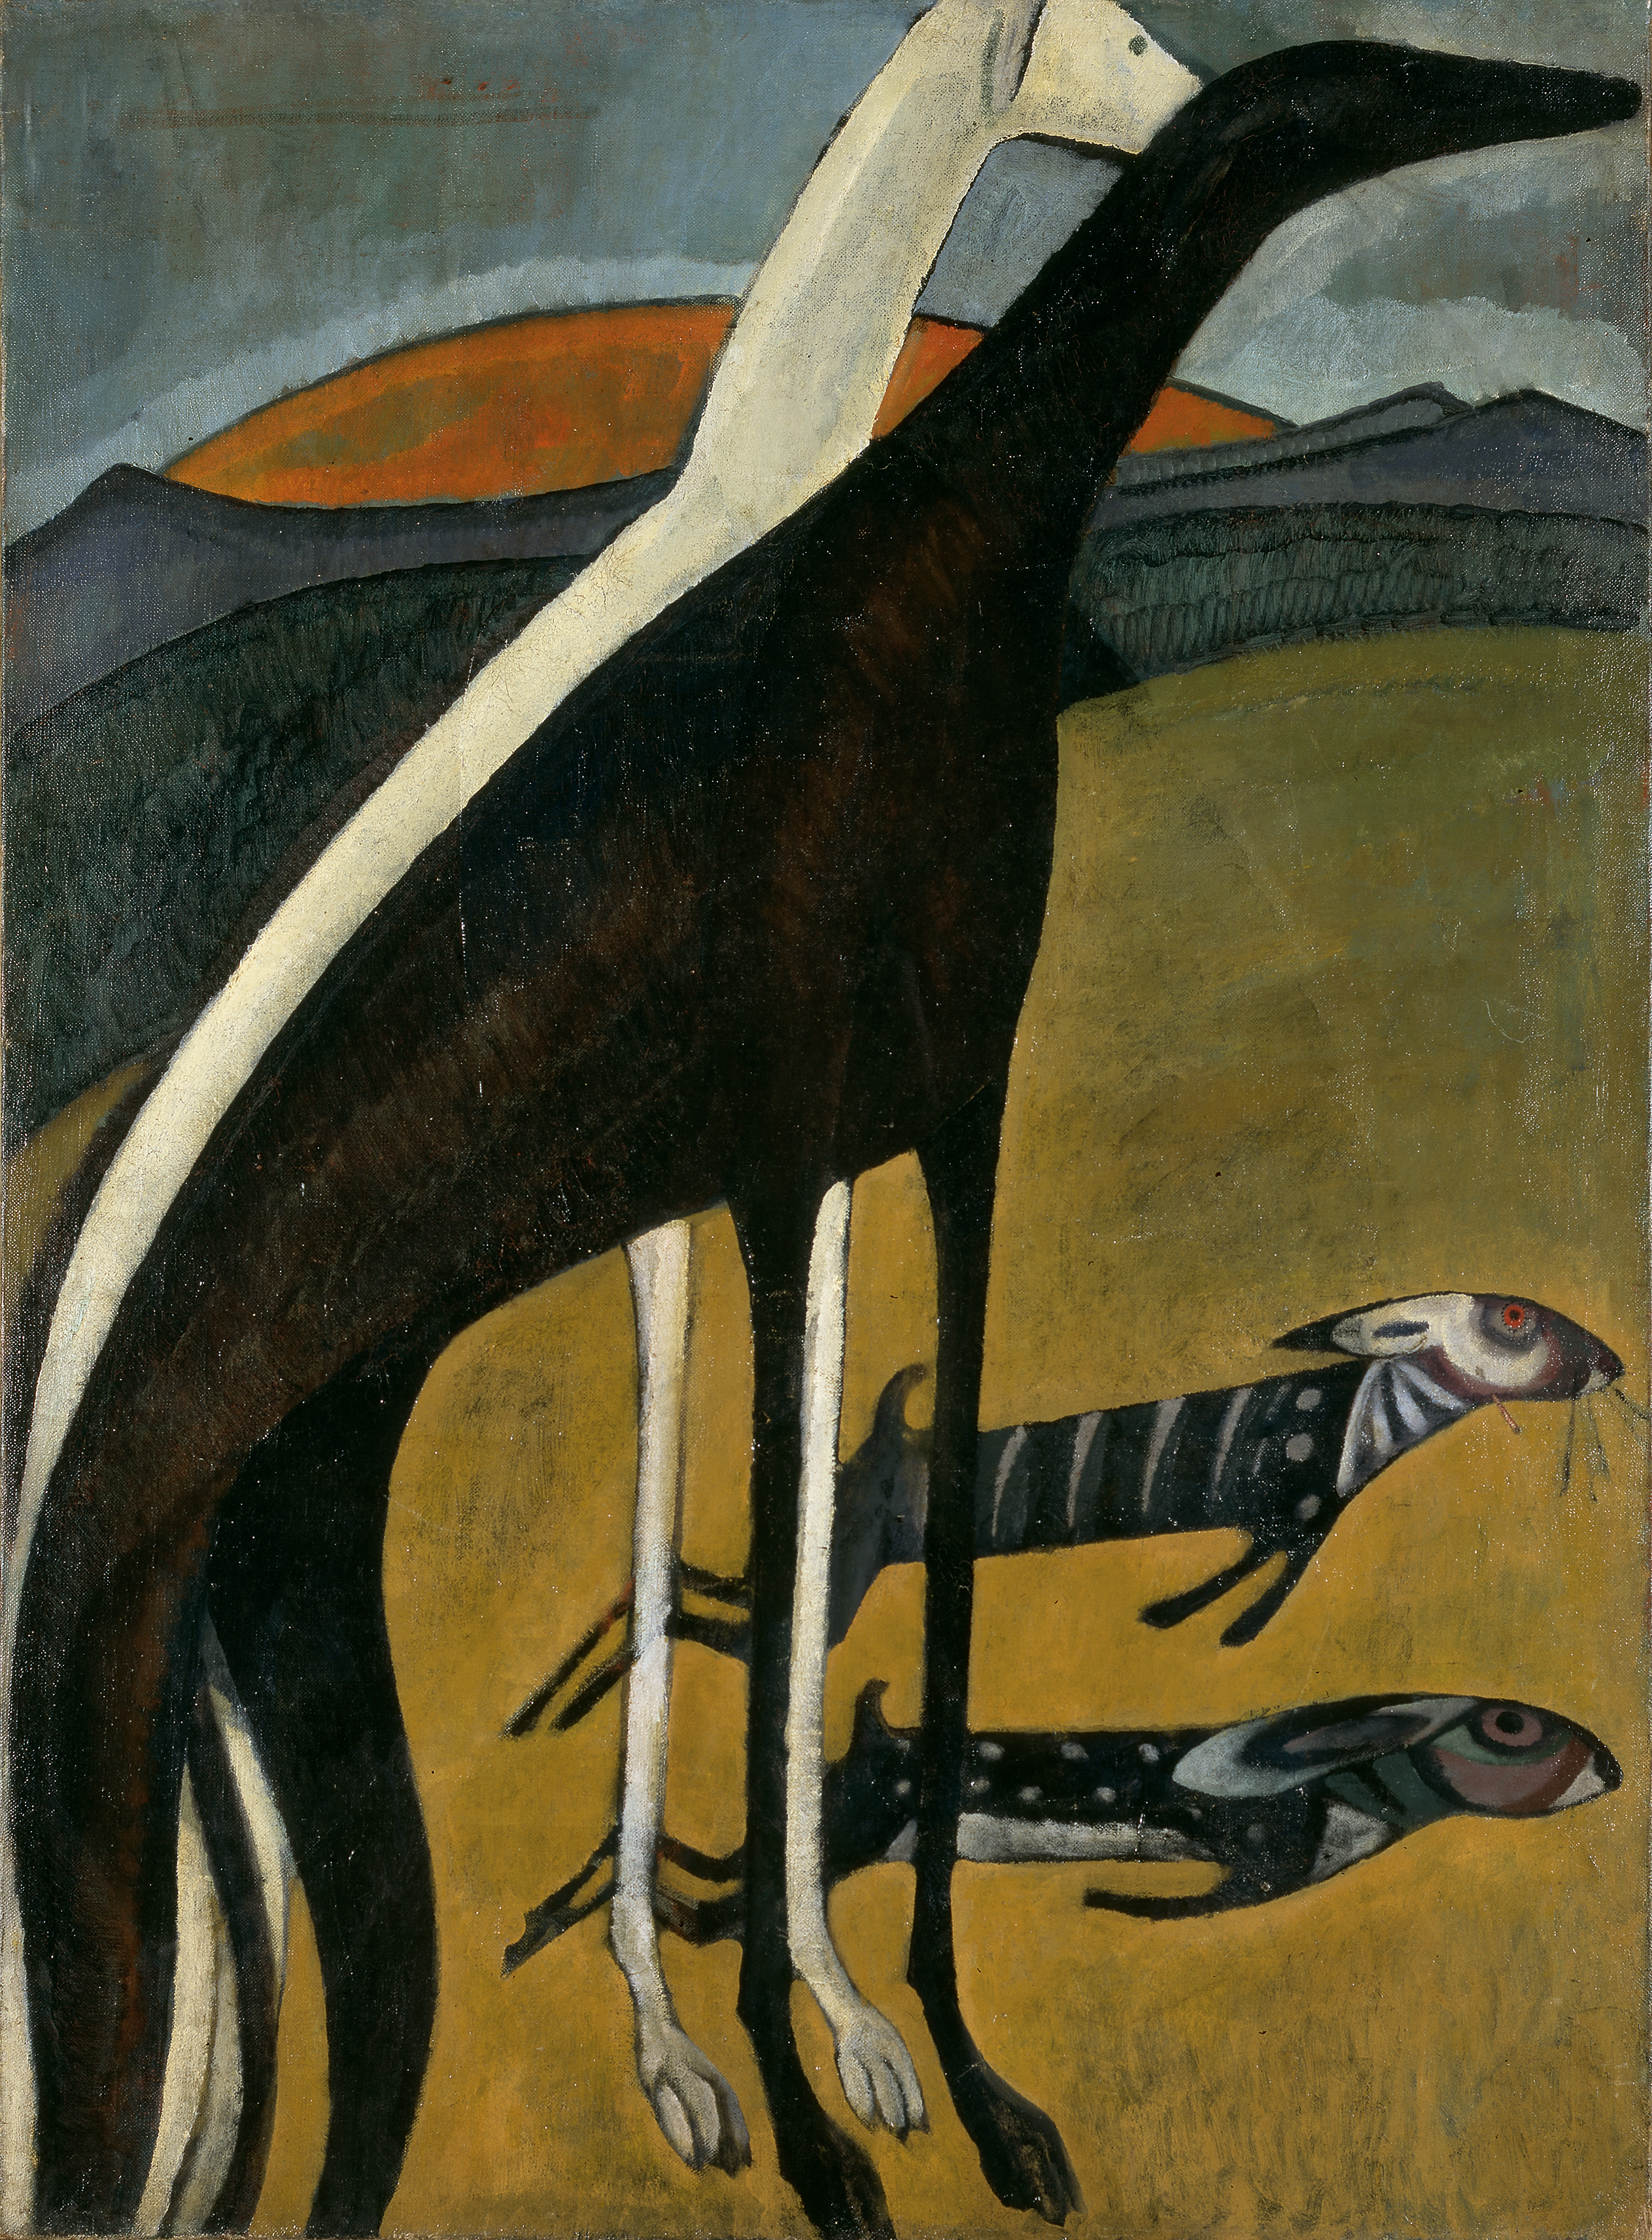 Ogarii by Amadeo de Souza Cardoso - 1911 - 100 x 73 cm 